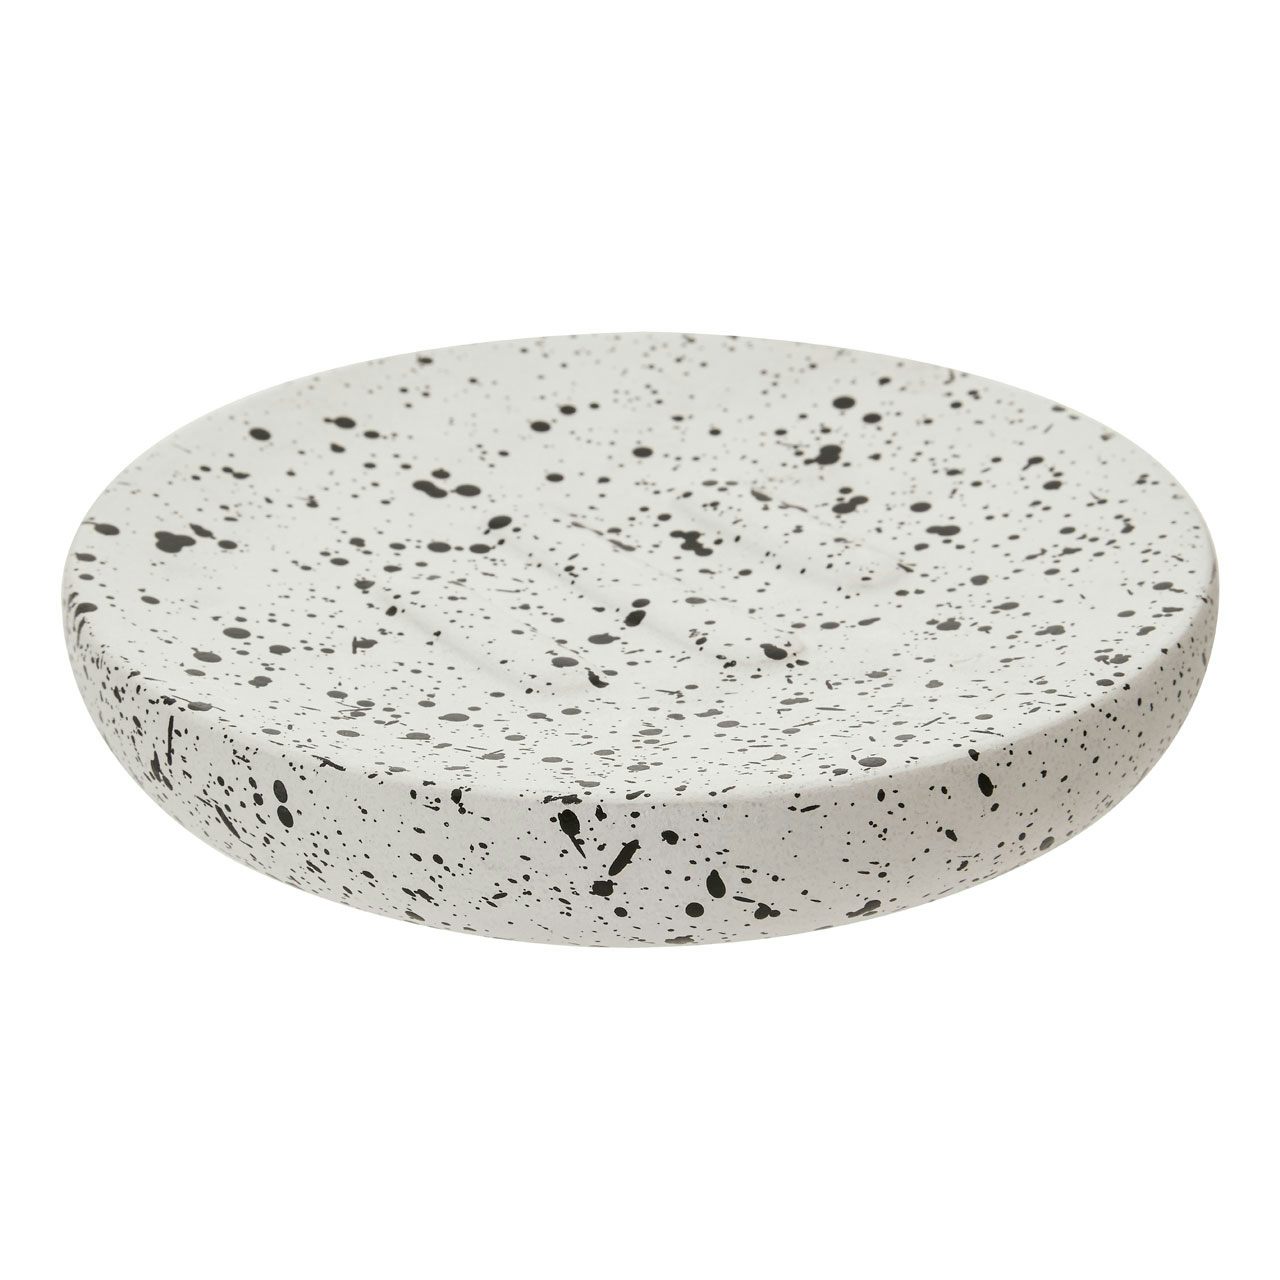 Accents Goza concrete white and black soap dish